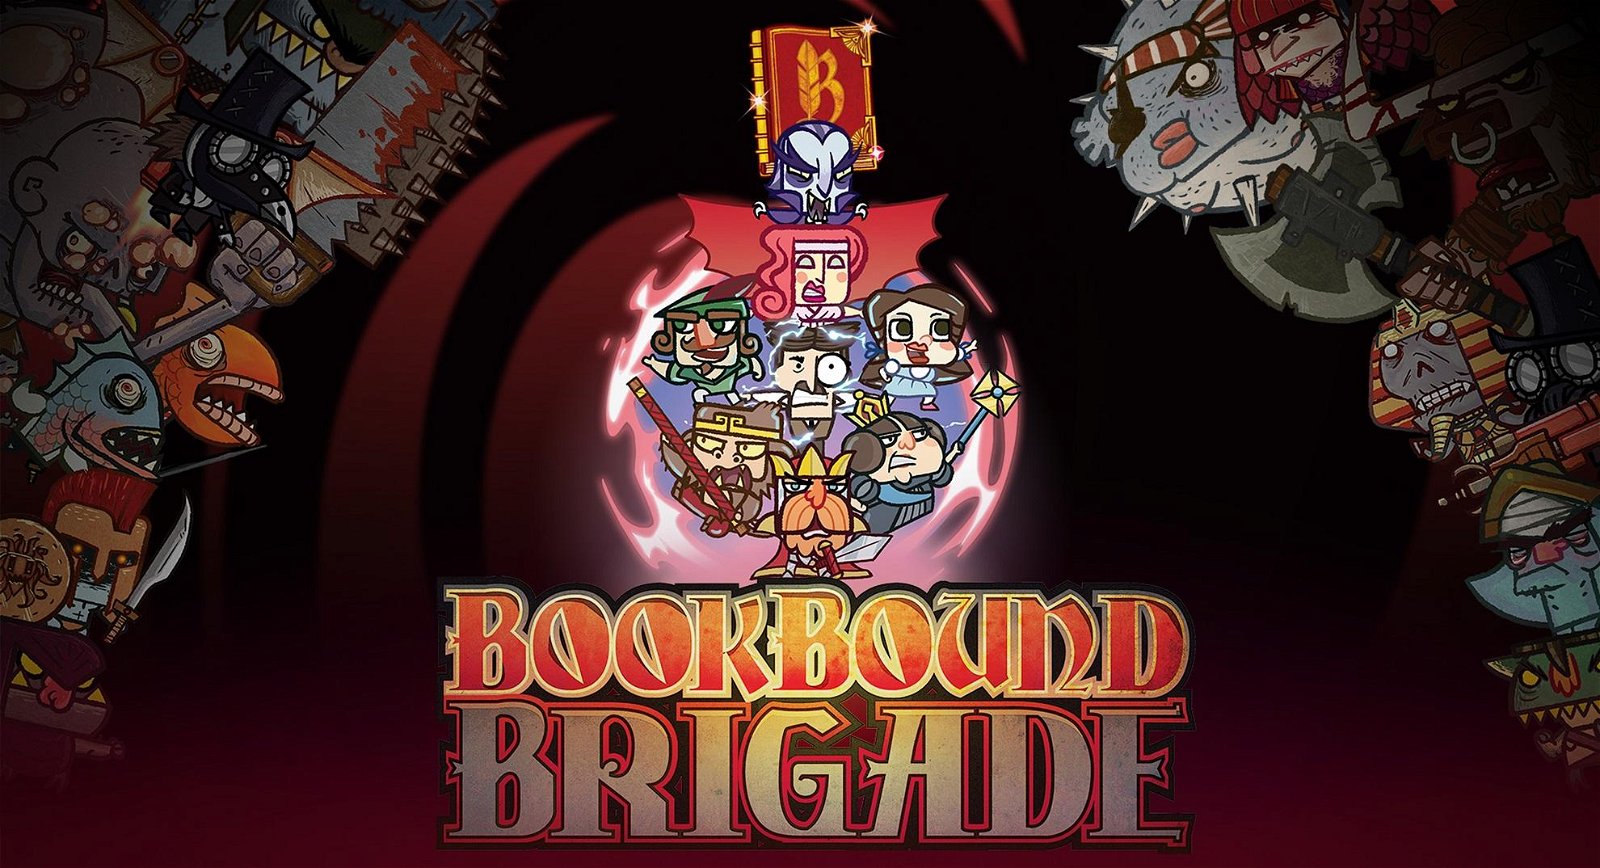 Bookbound Brigade, a spasso tra le pagine - Recensione